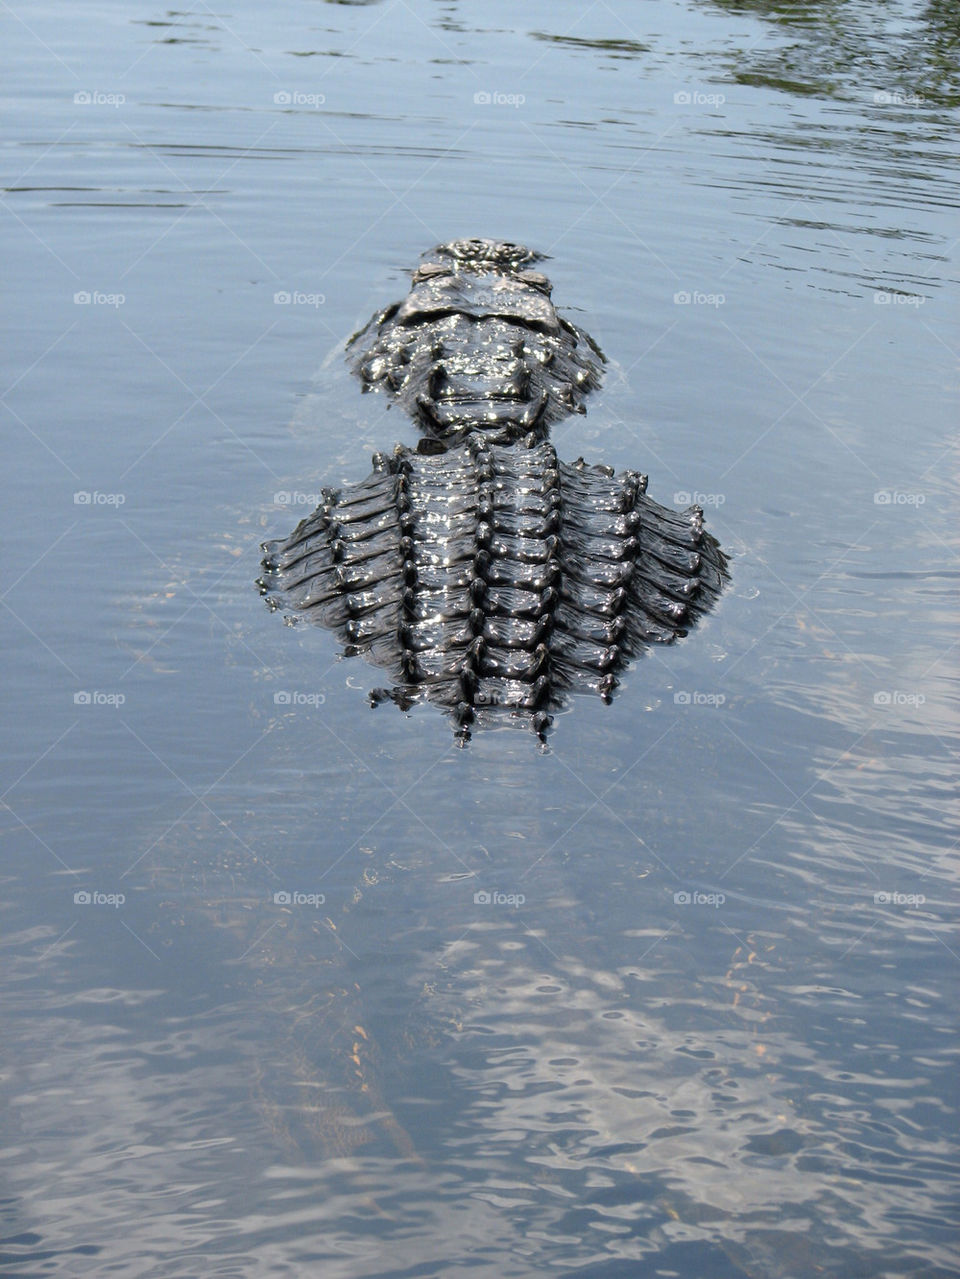 alligator everglades by gatordukie